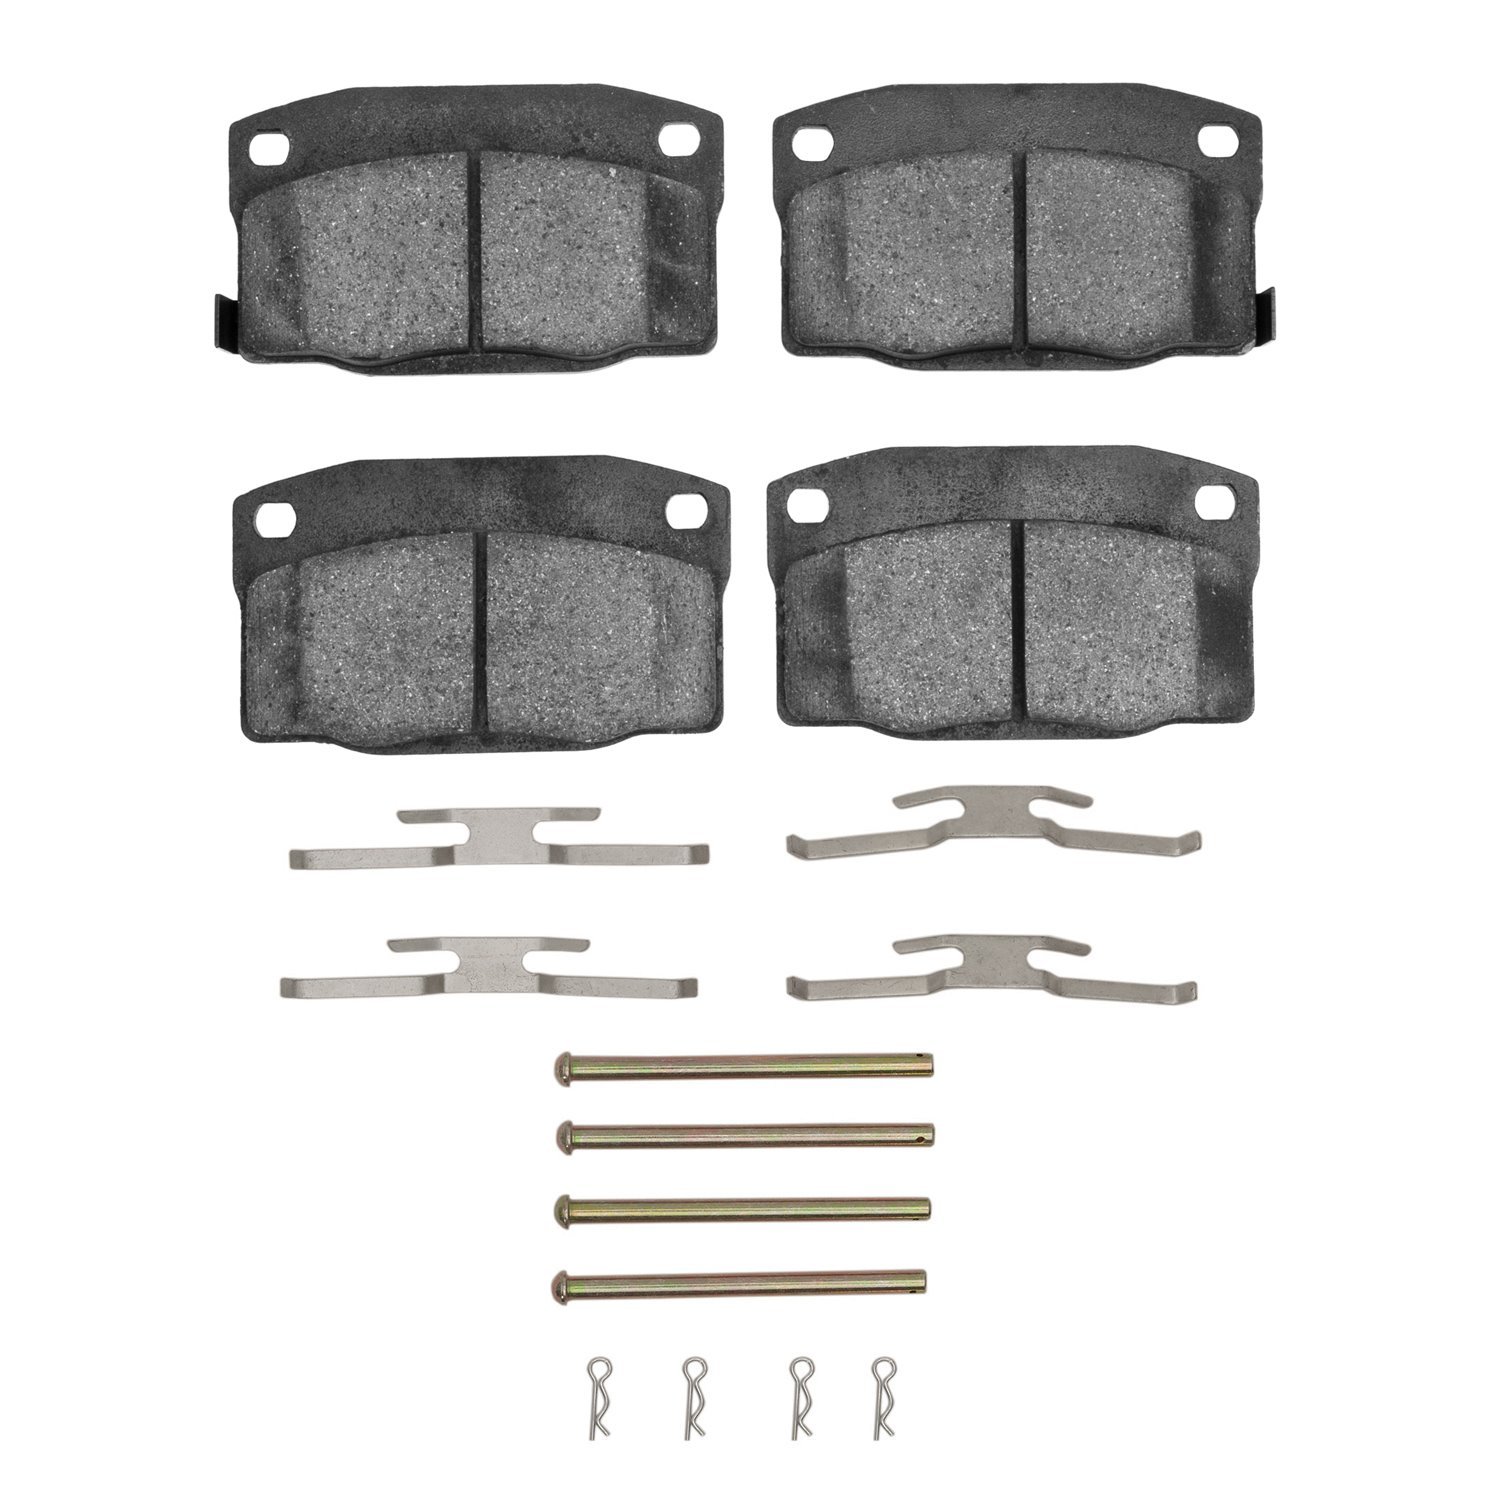 1310-0378-02 3000-Series Ceramic Brake Pads & Hardware Kit, 1988-1989 GM, Position: Front